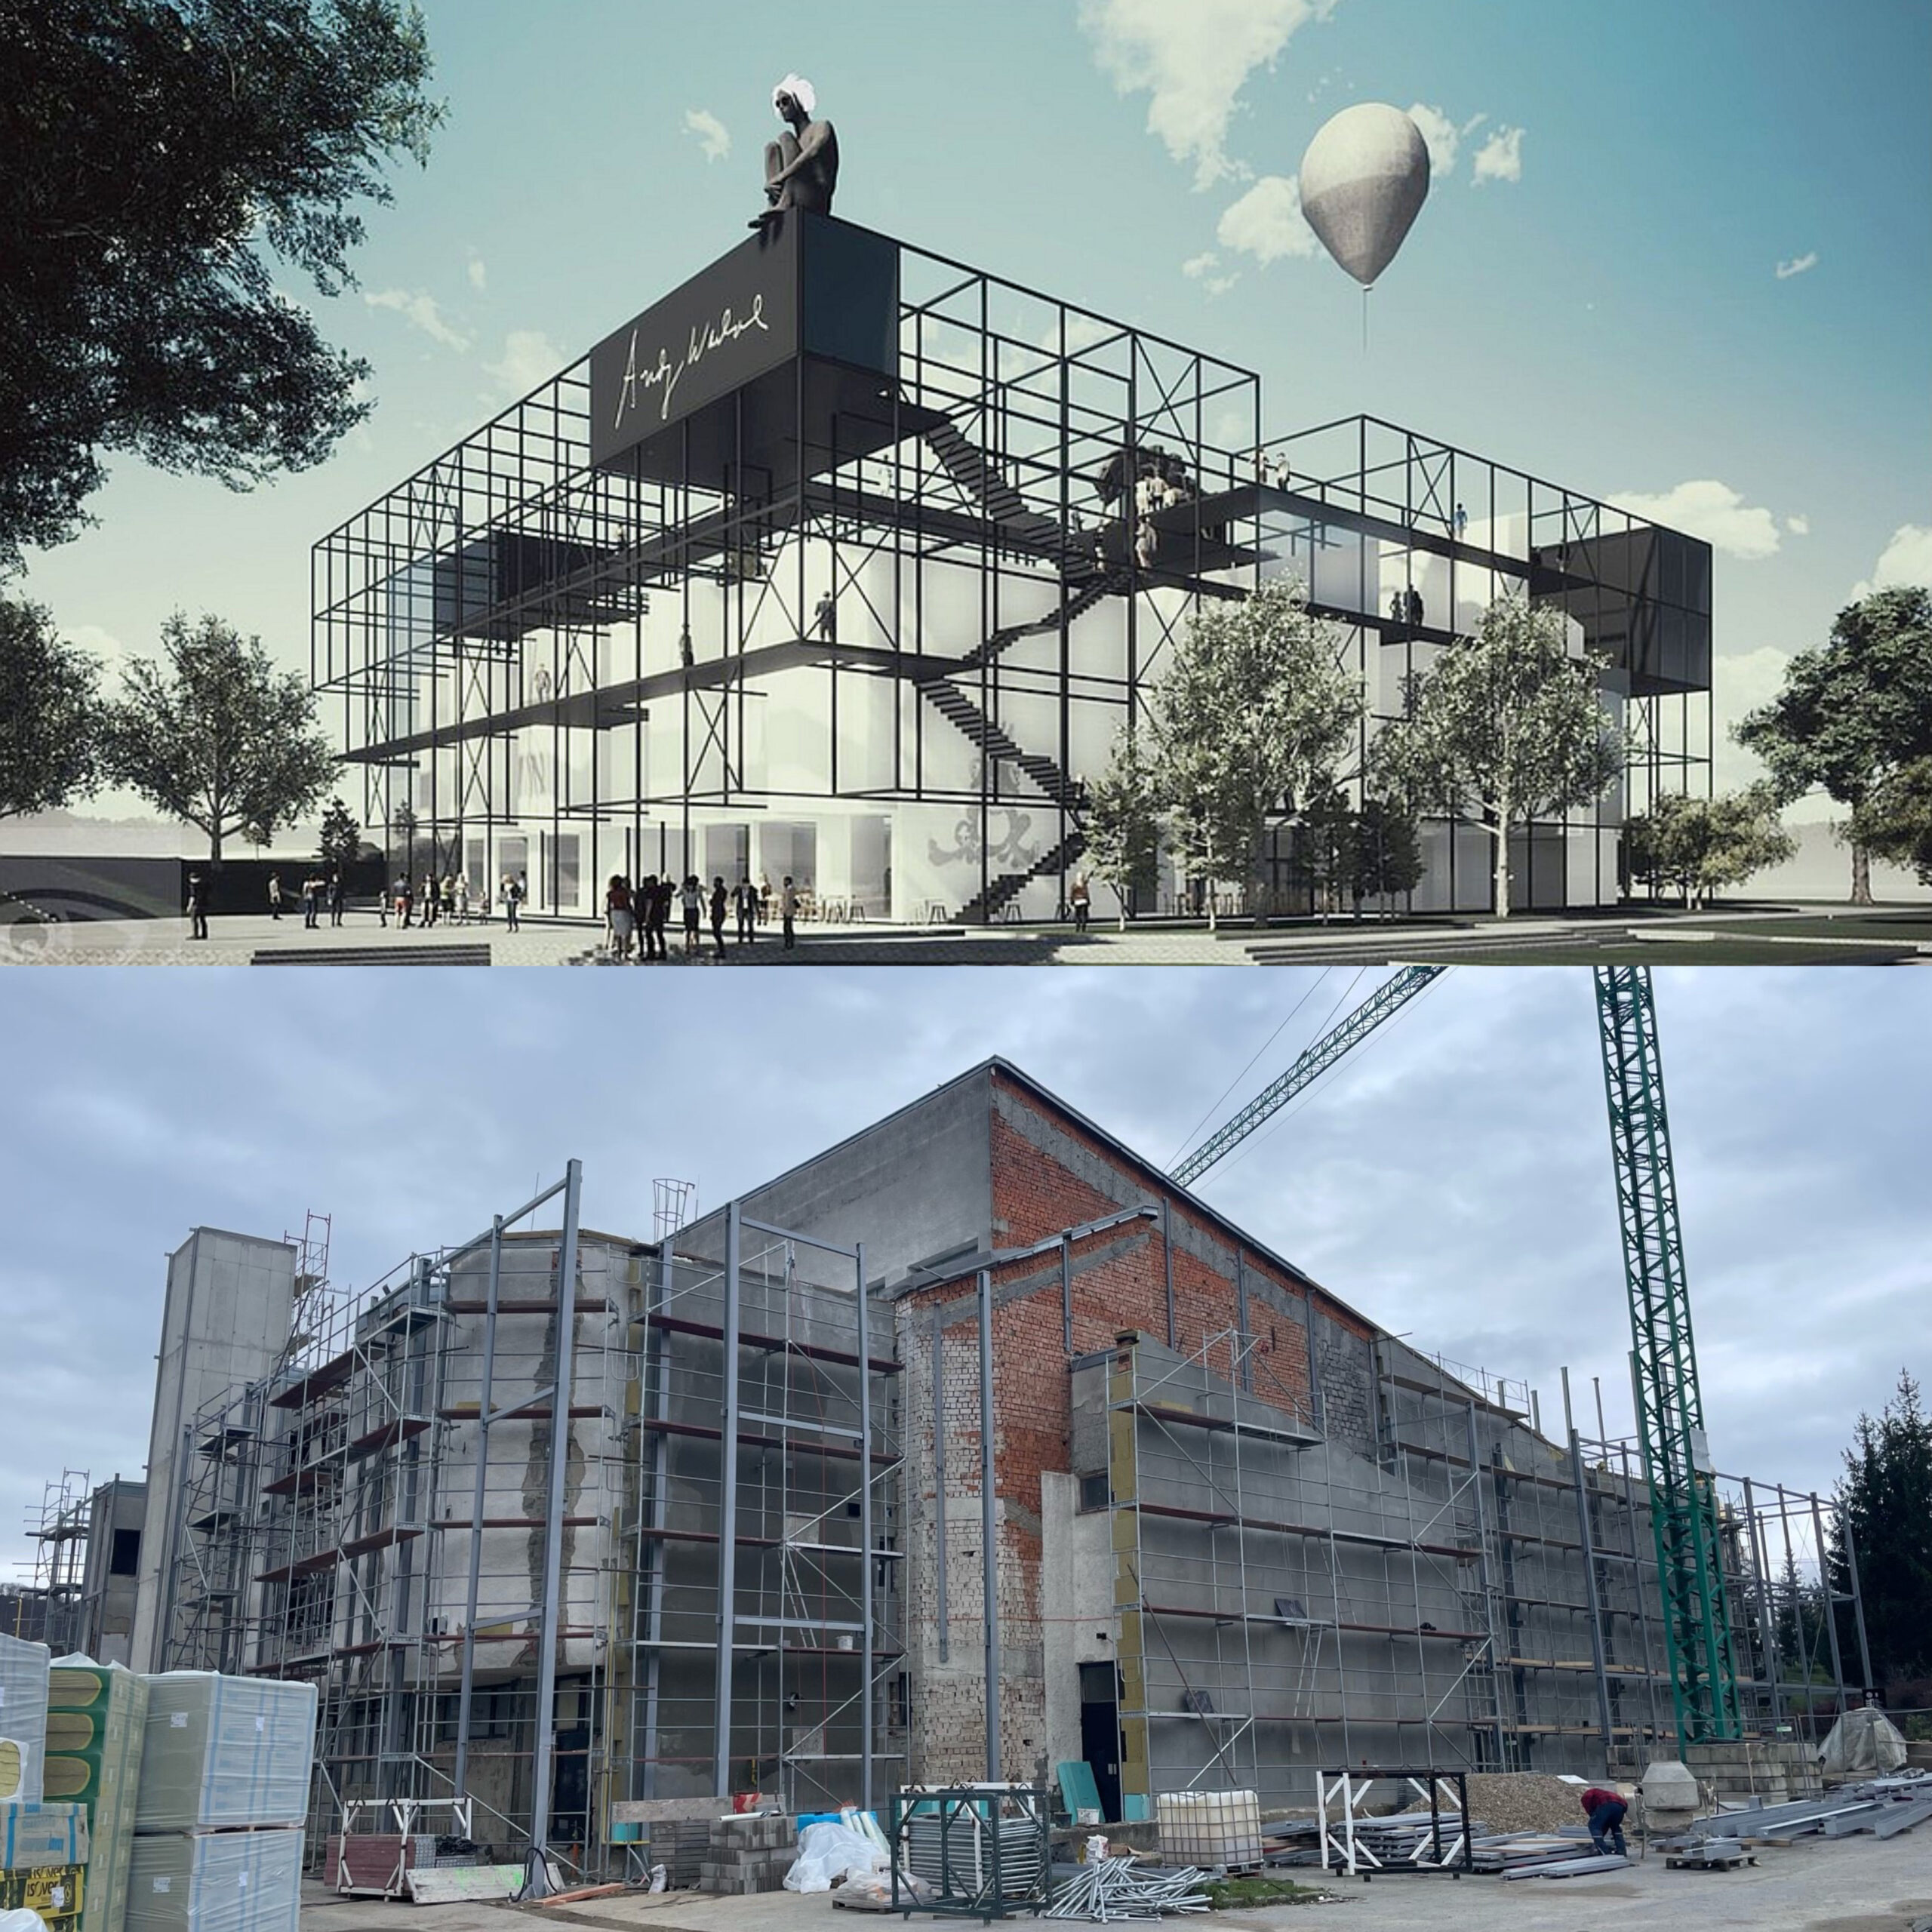 Vizualizácia budúcej podoby Múzea Andyho Warhola (hore) a aktuálny stav rekonštrukcie (dole)